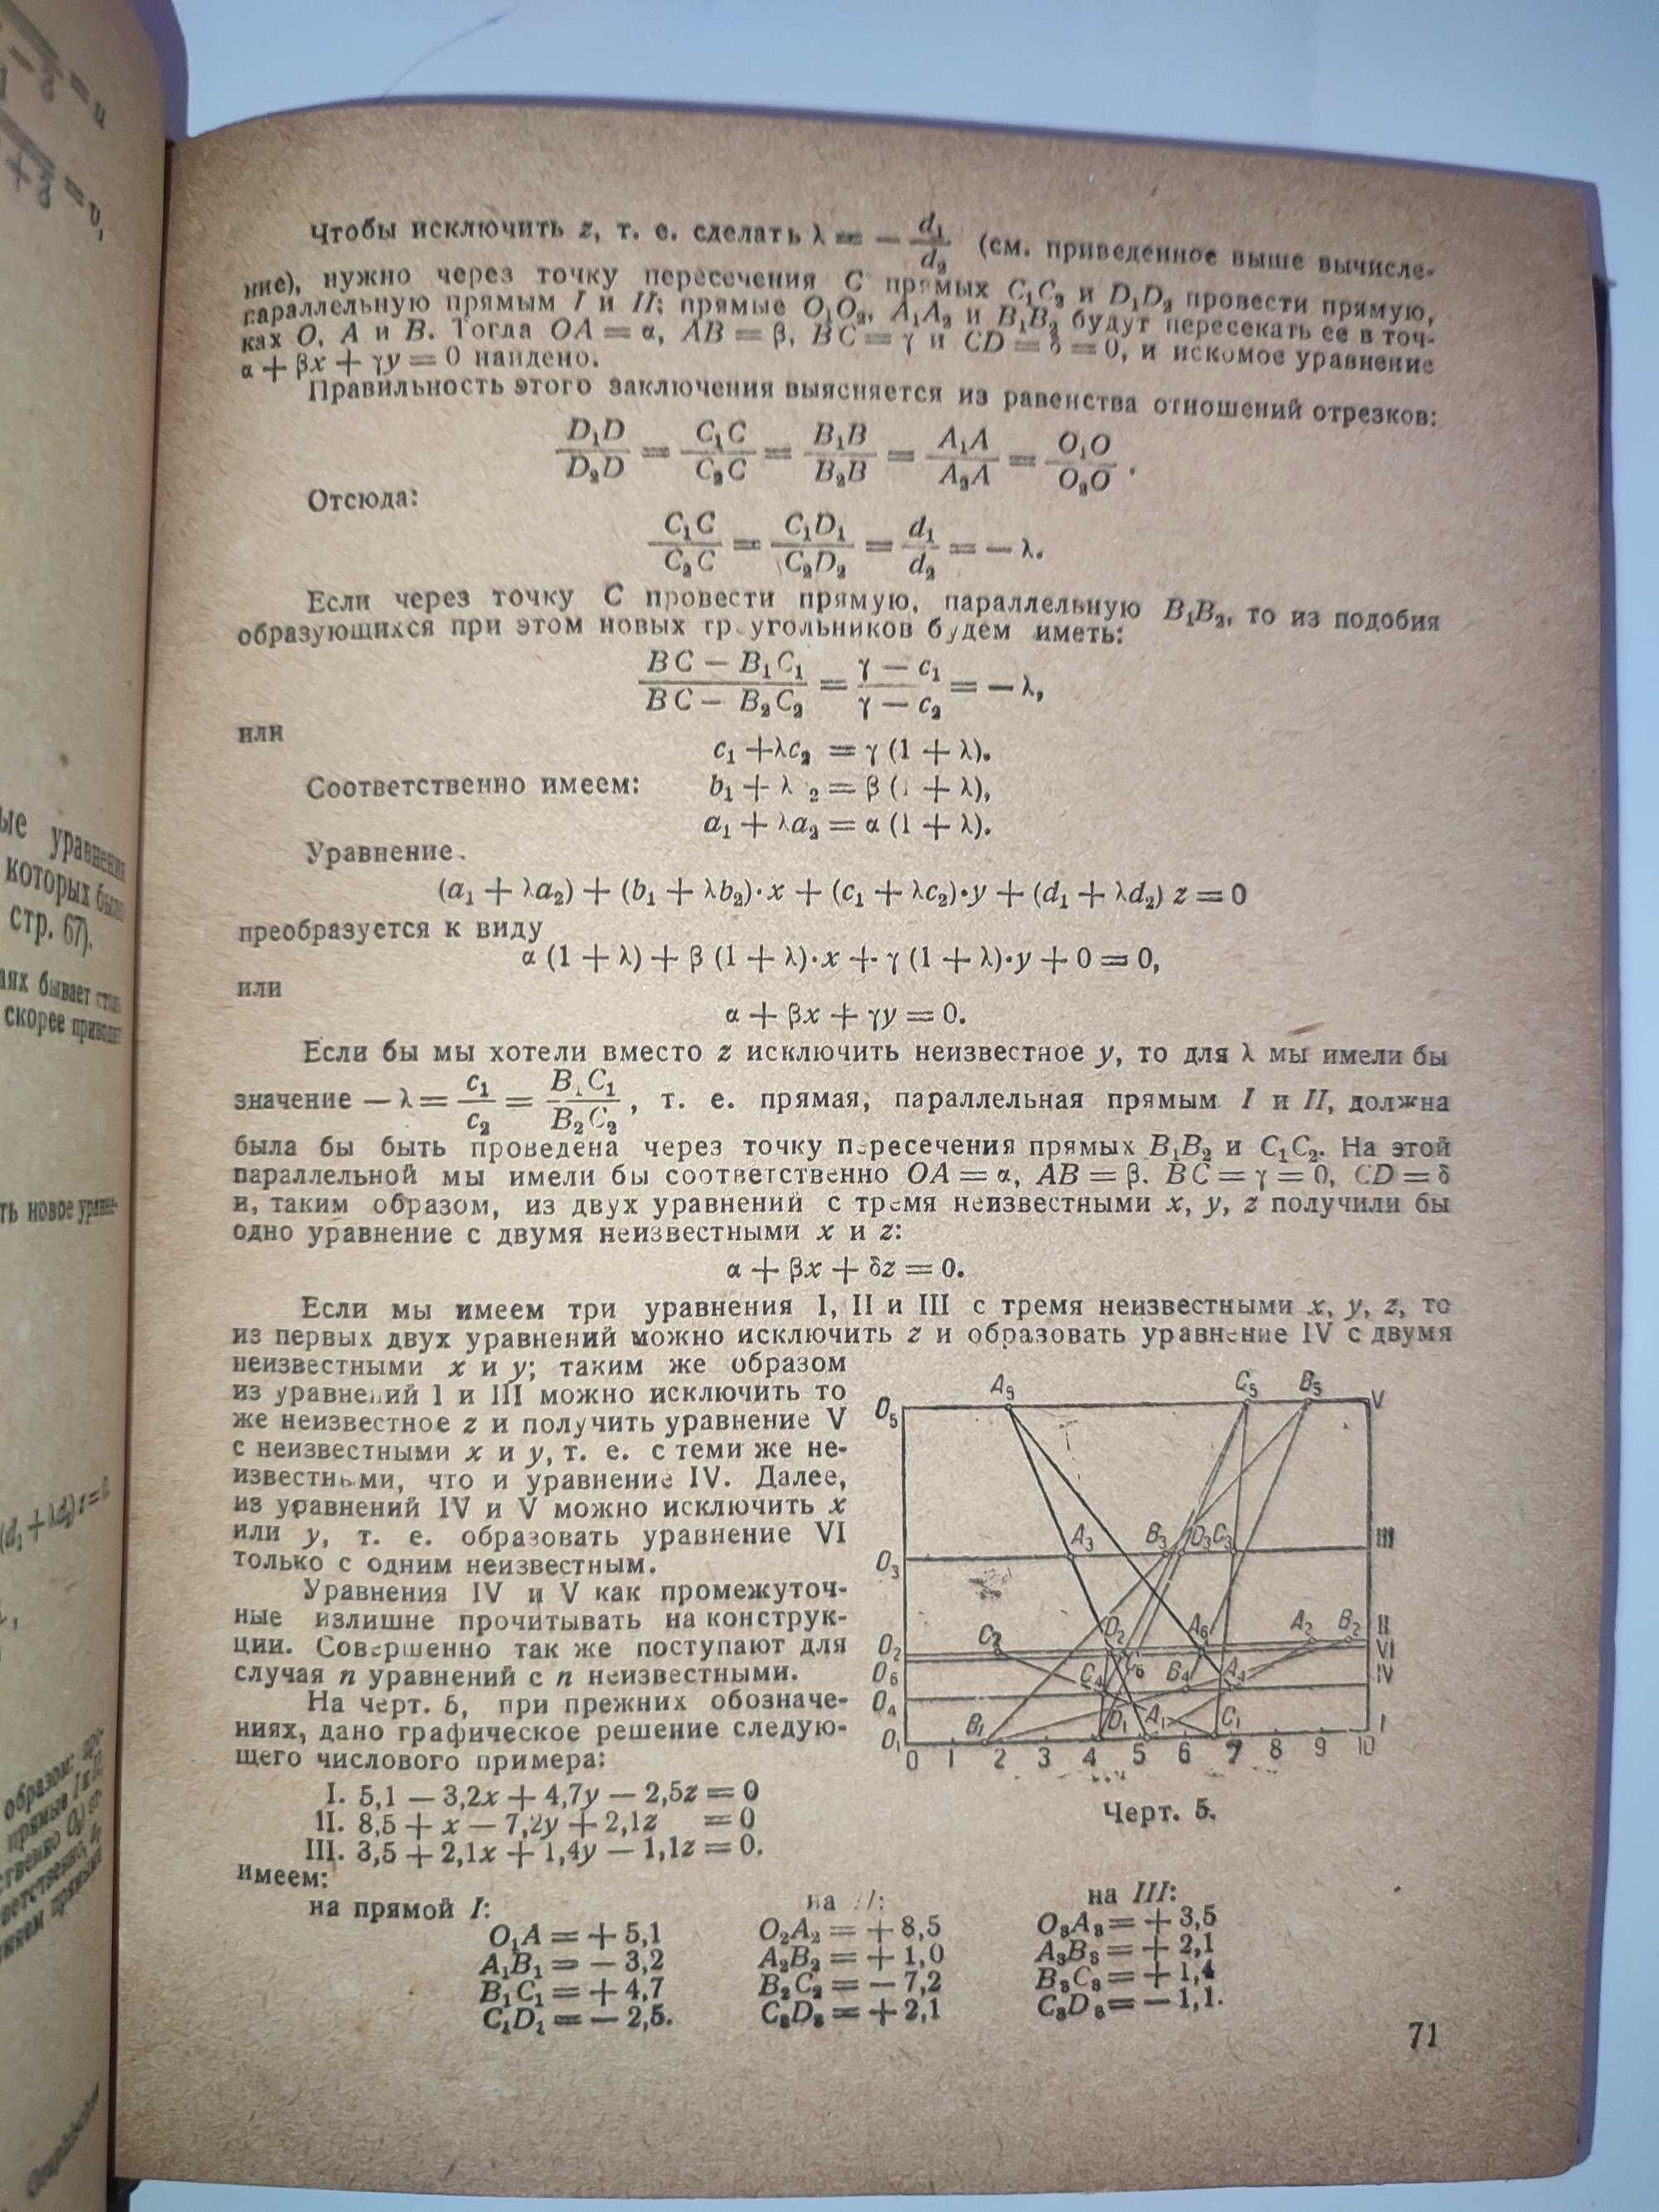 Справочник по математике профессор Дуббель 1936